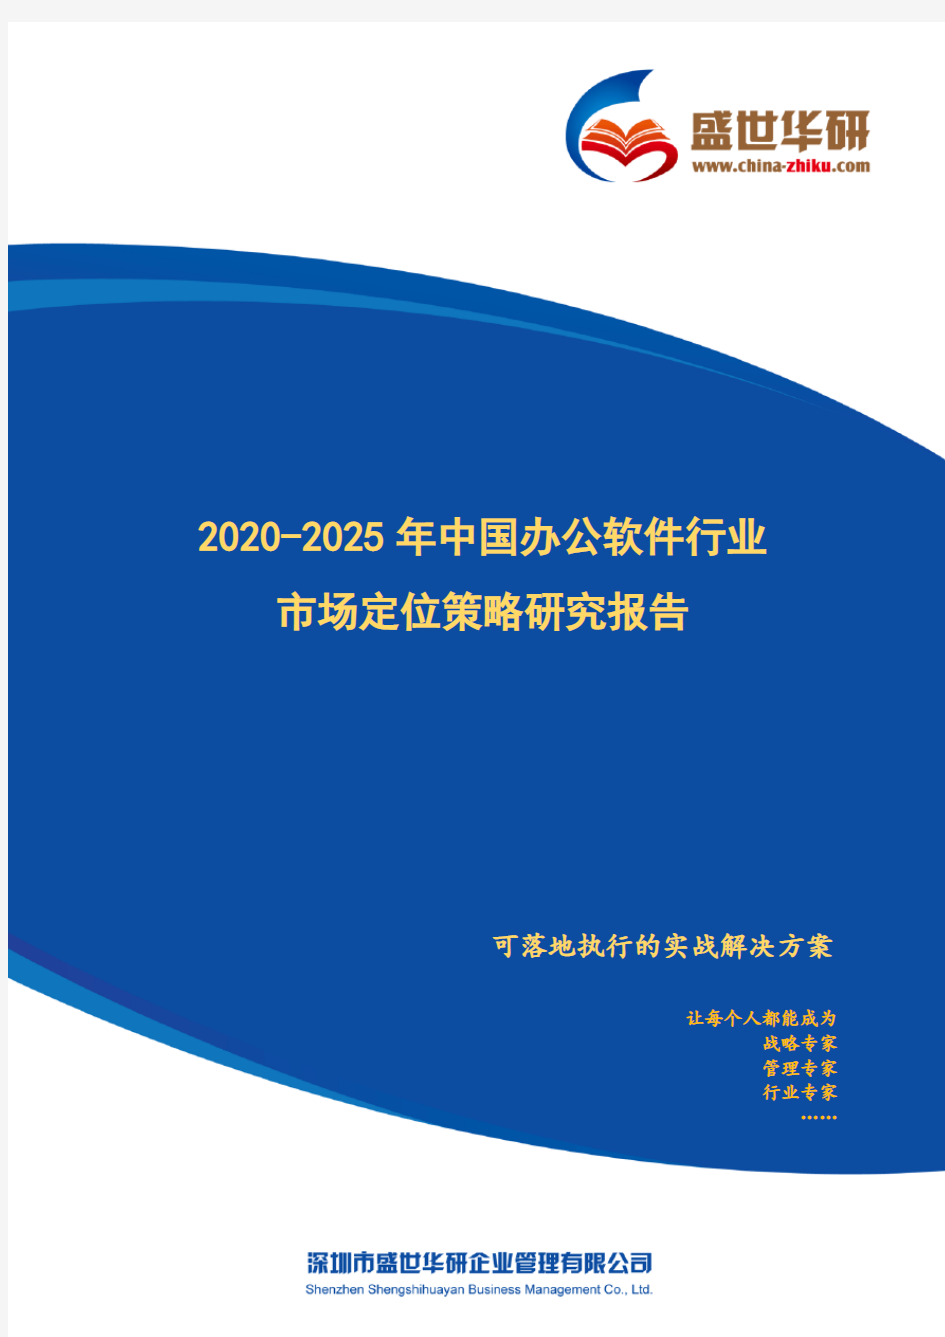 【完整版】2020-2025年中国办公软件行业市场定位策略研究报告